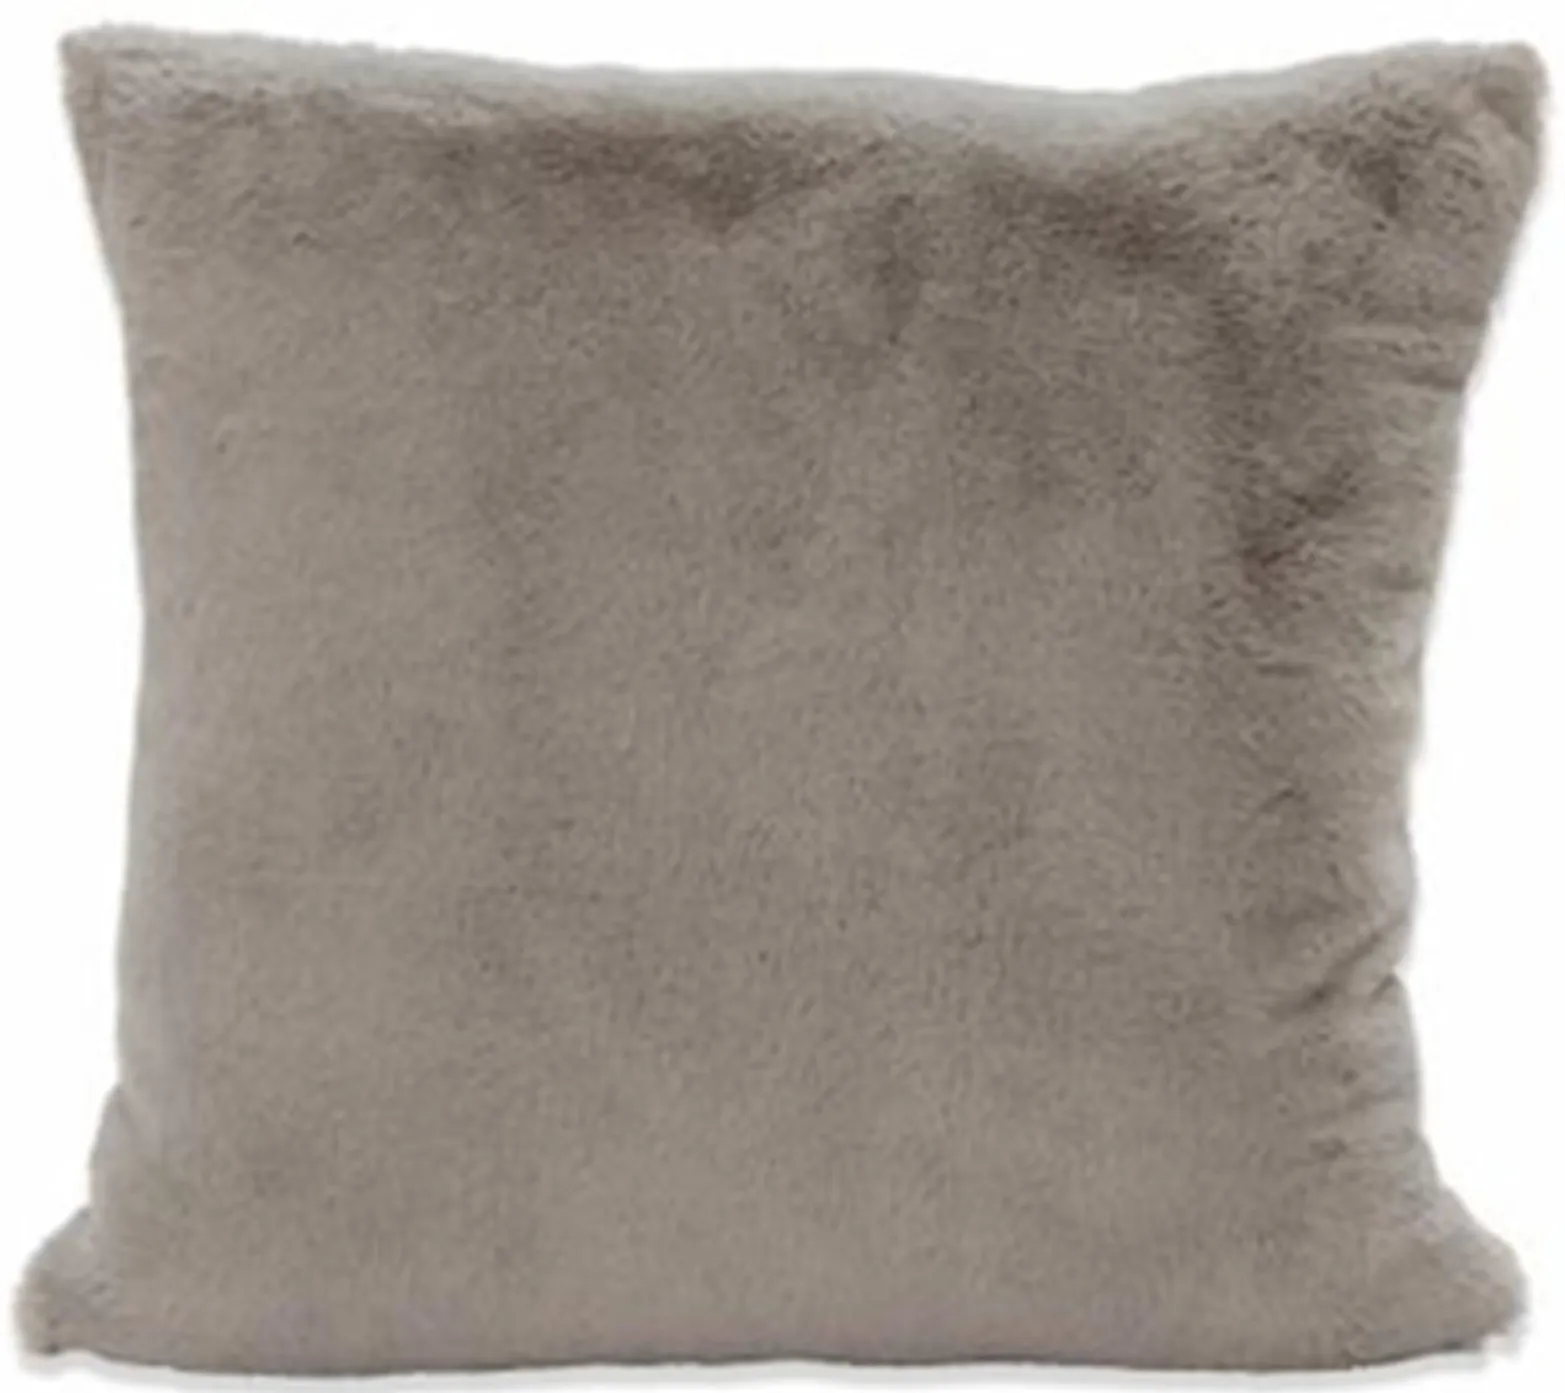 Grey Faux Rabbit Fur Pillow 20"W x 20"H